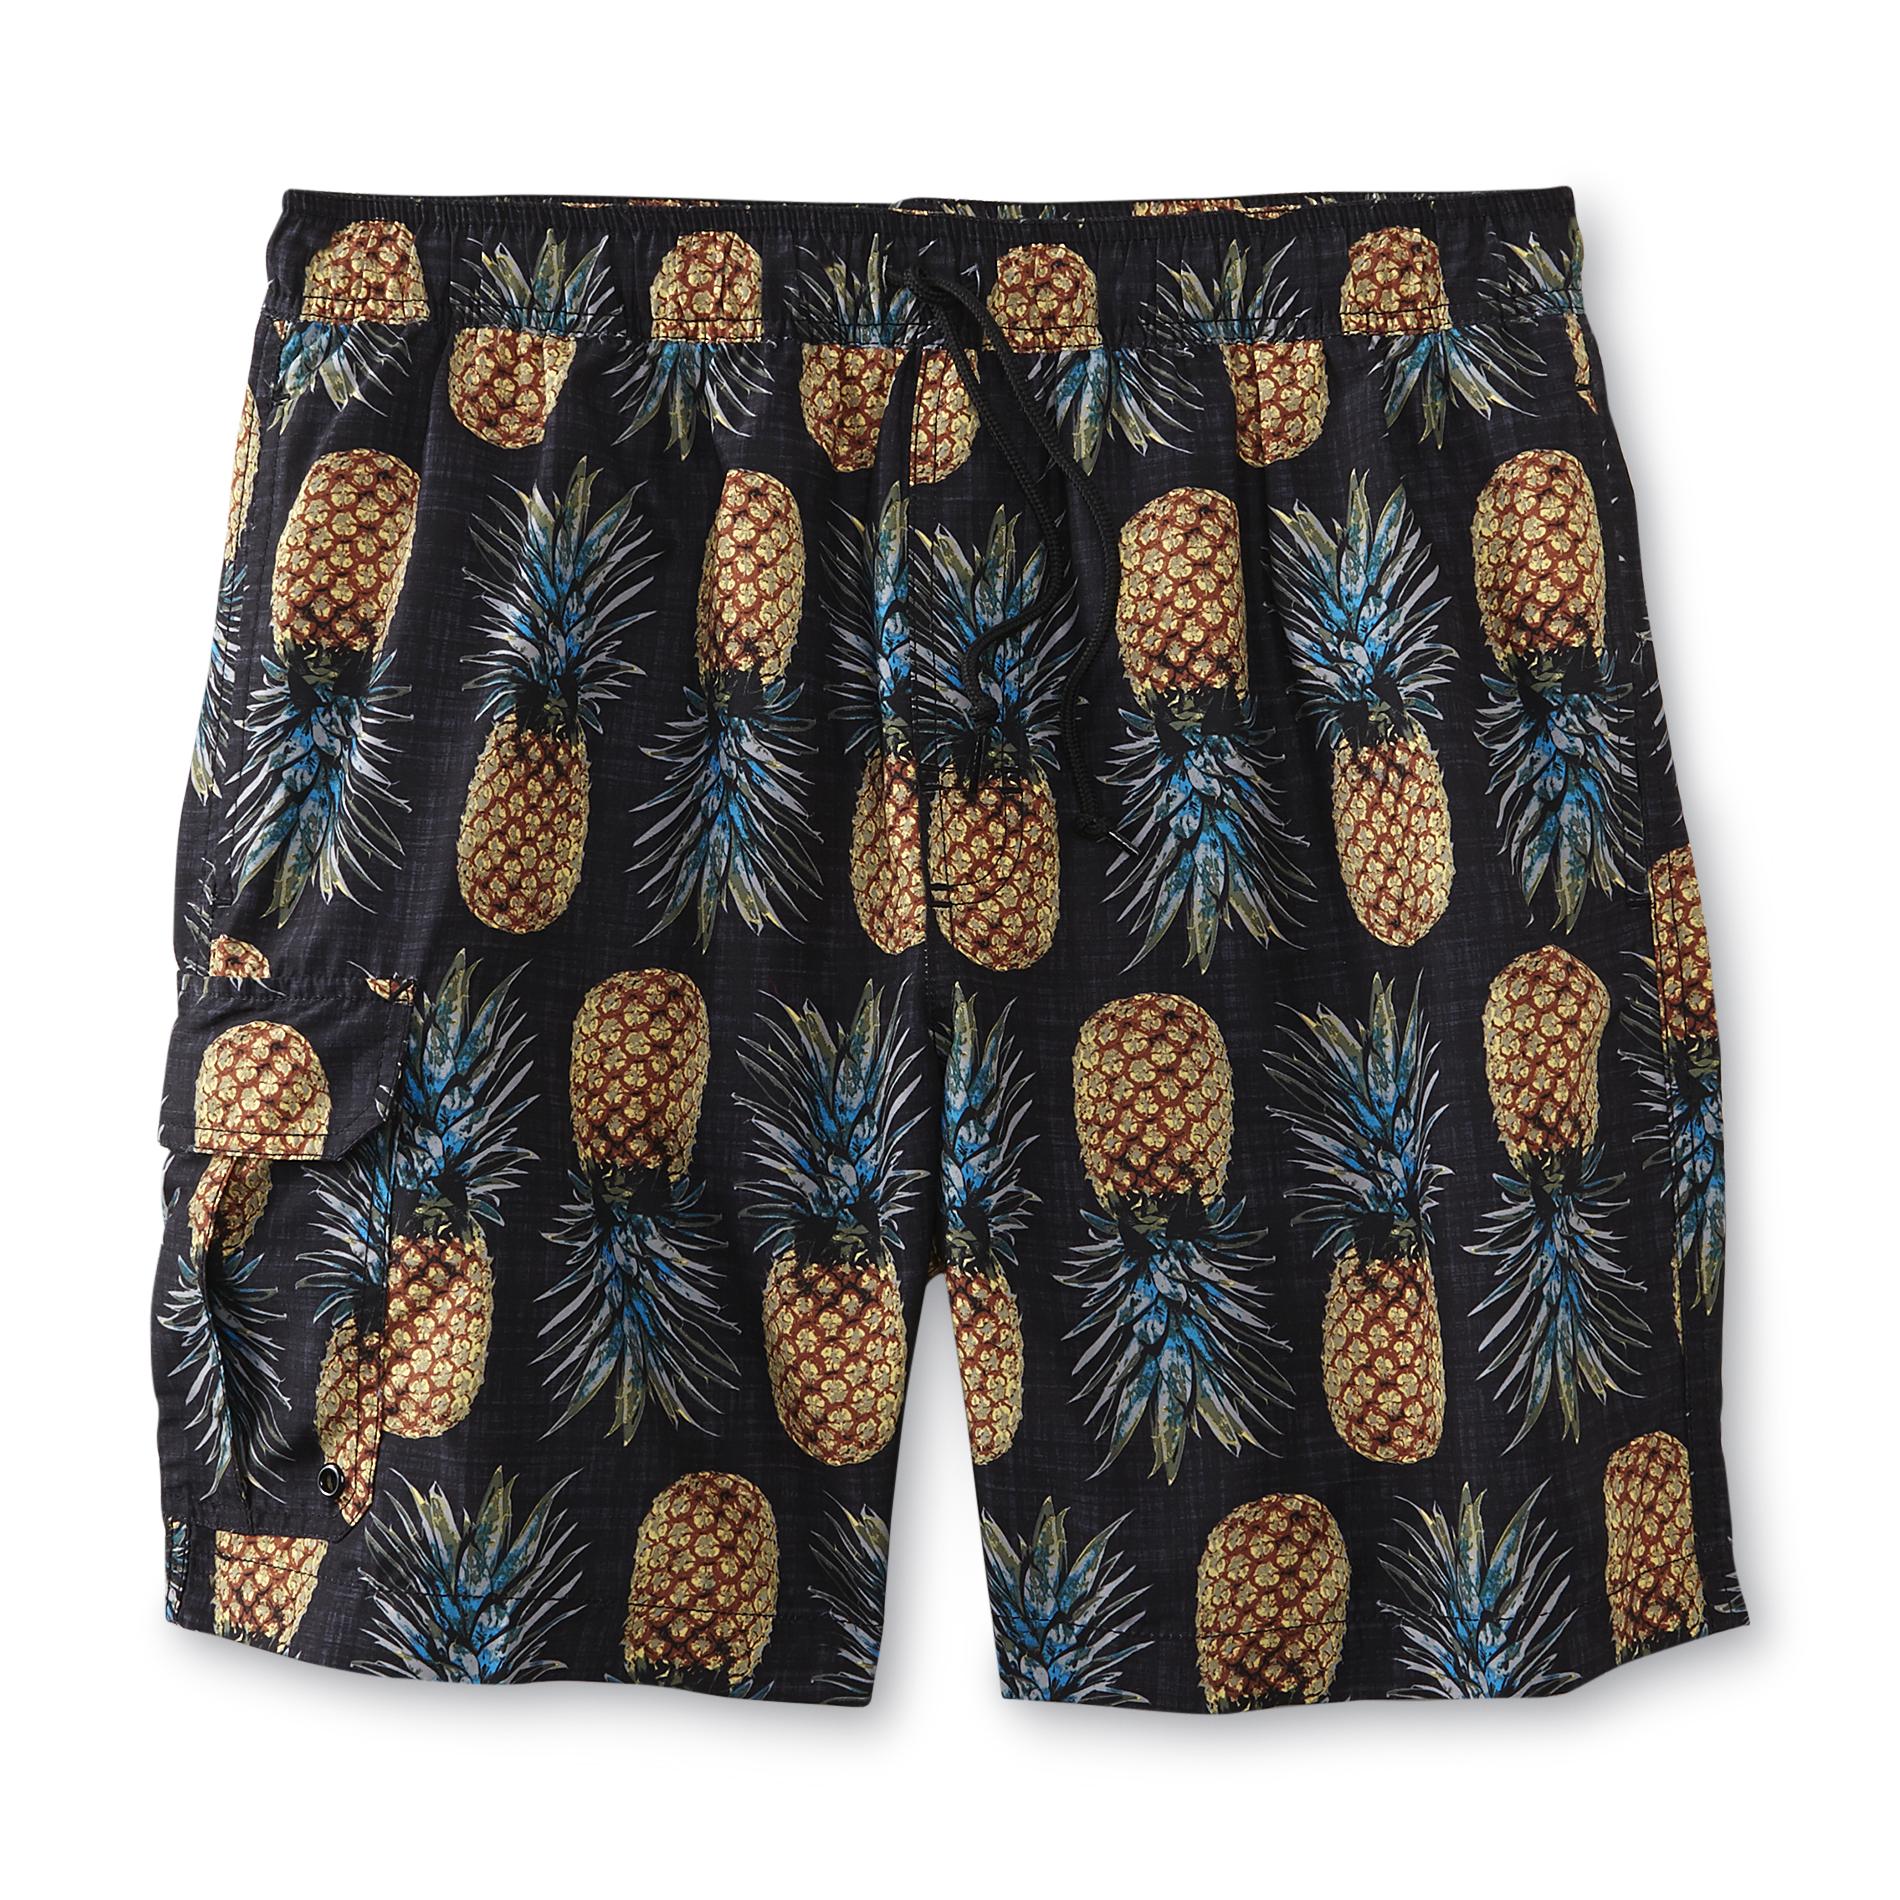 Islander Men's Cargo Swim Trunks - Pineapples